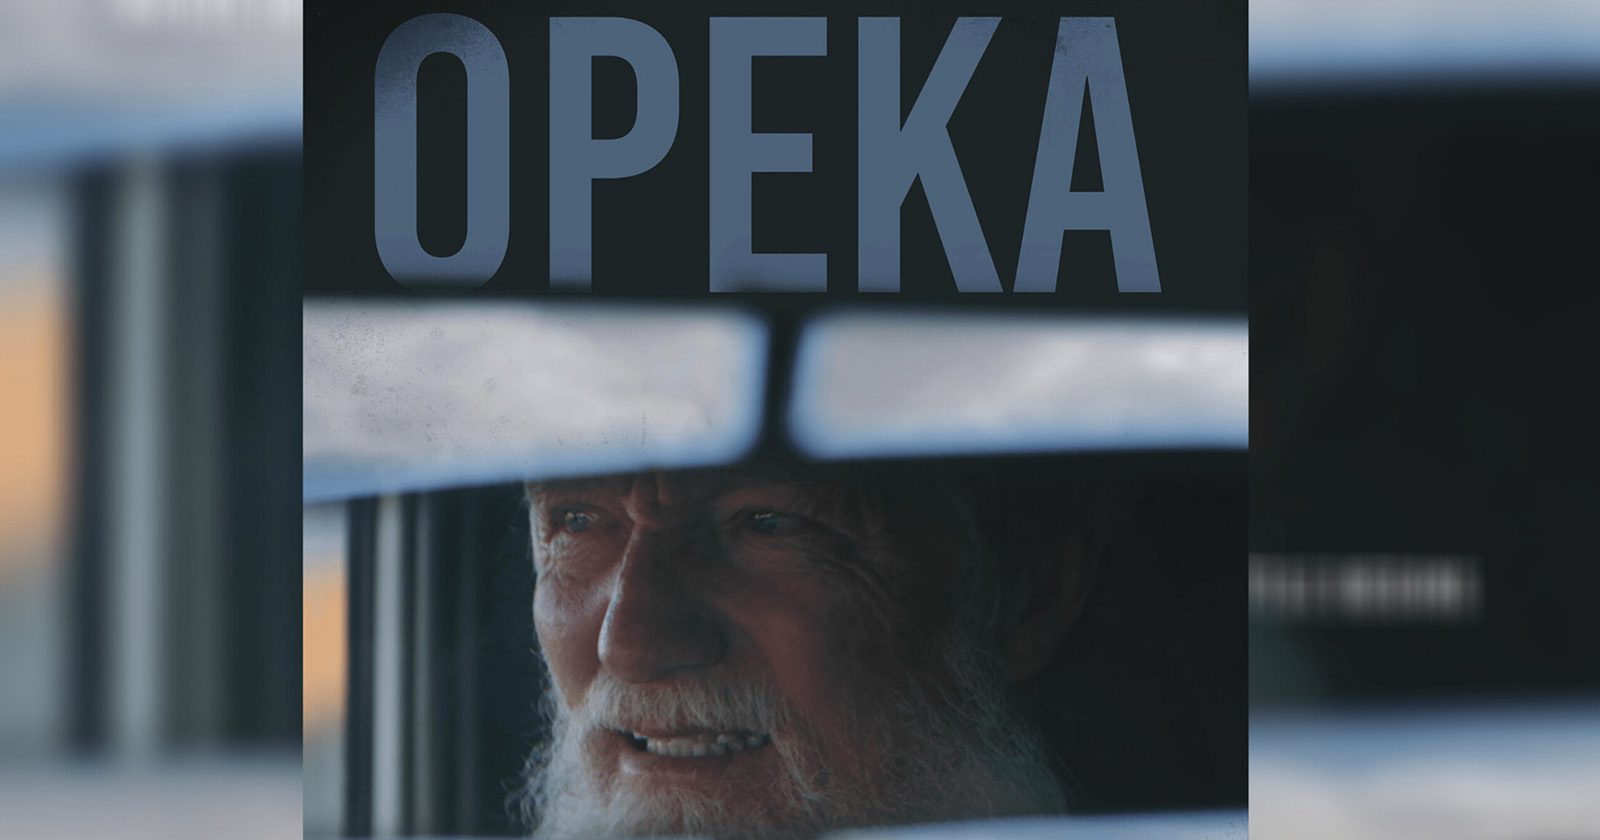 Le documentaire « Opeka » remporte la Palme d’Or au Beverly Hills Film Festival